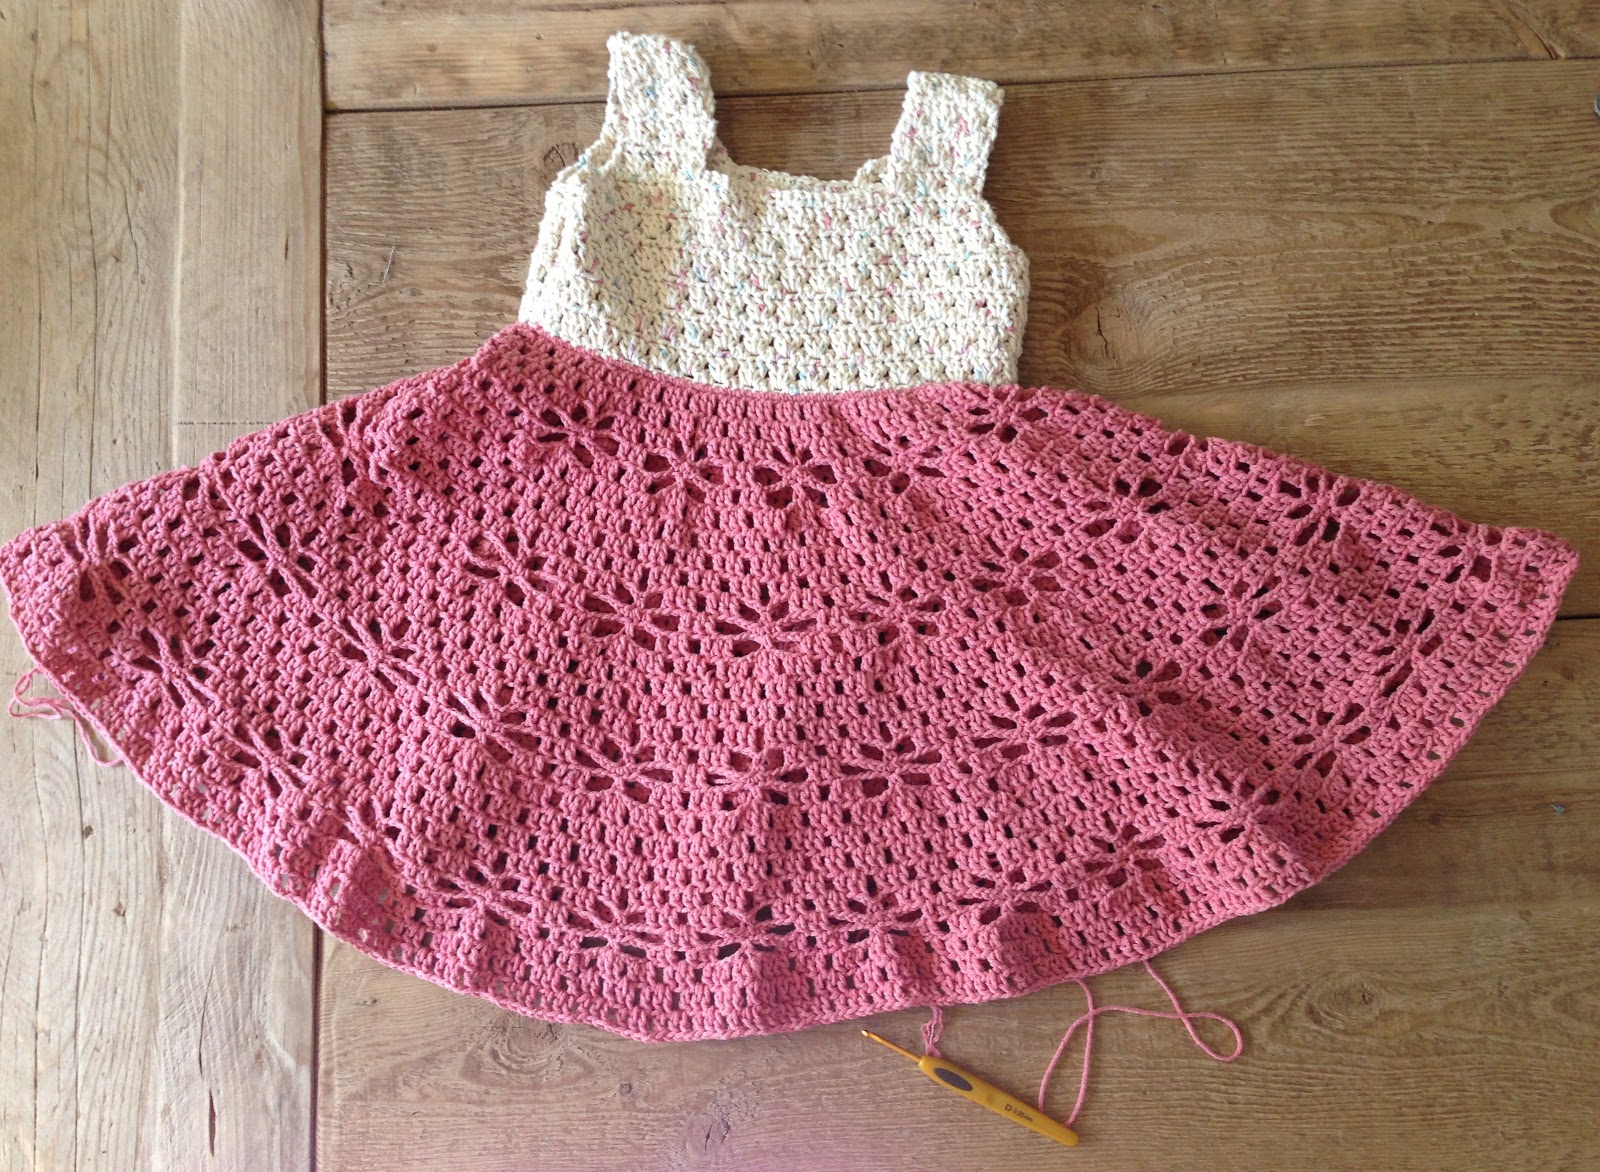 Crochet Baby Dress Free Pattern Crochet Ba Dress Crochet Yarn Pattern Free